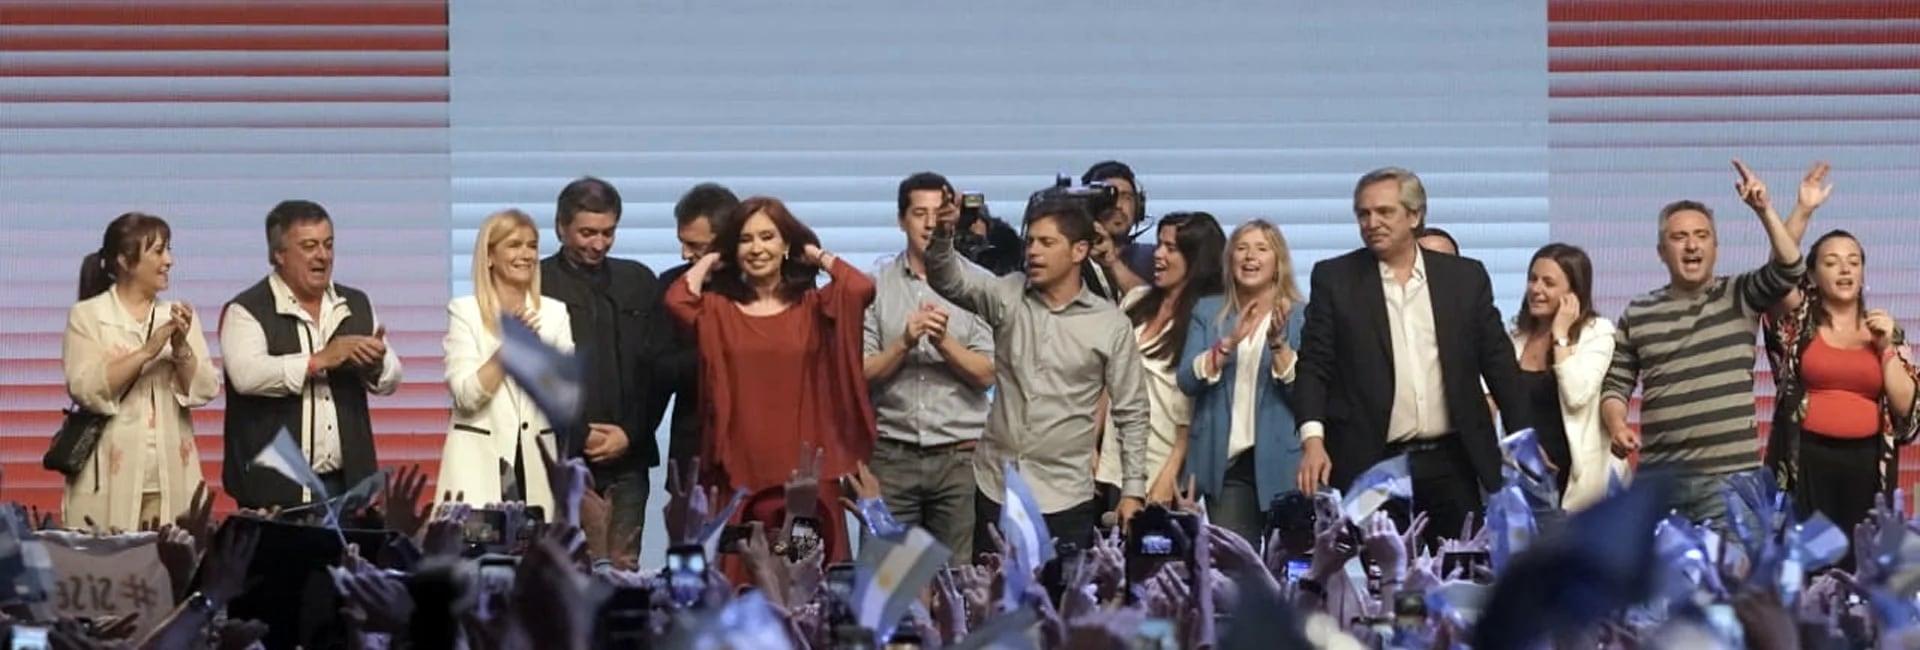 Los principales dirigentes del Frente de Todos durante los festejos después del triunfo en las elecciones (Pablo Barrera)